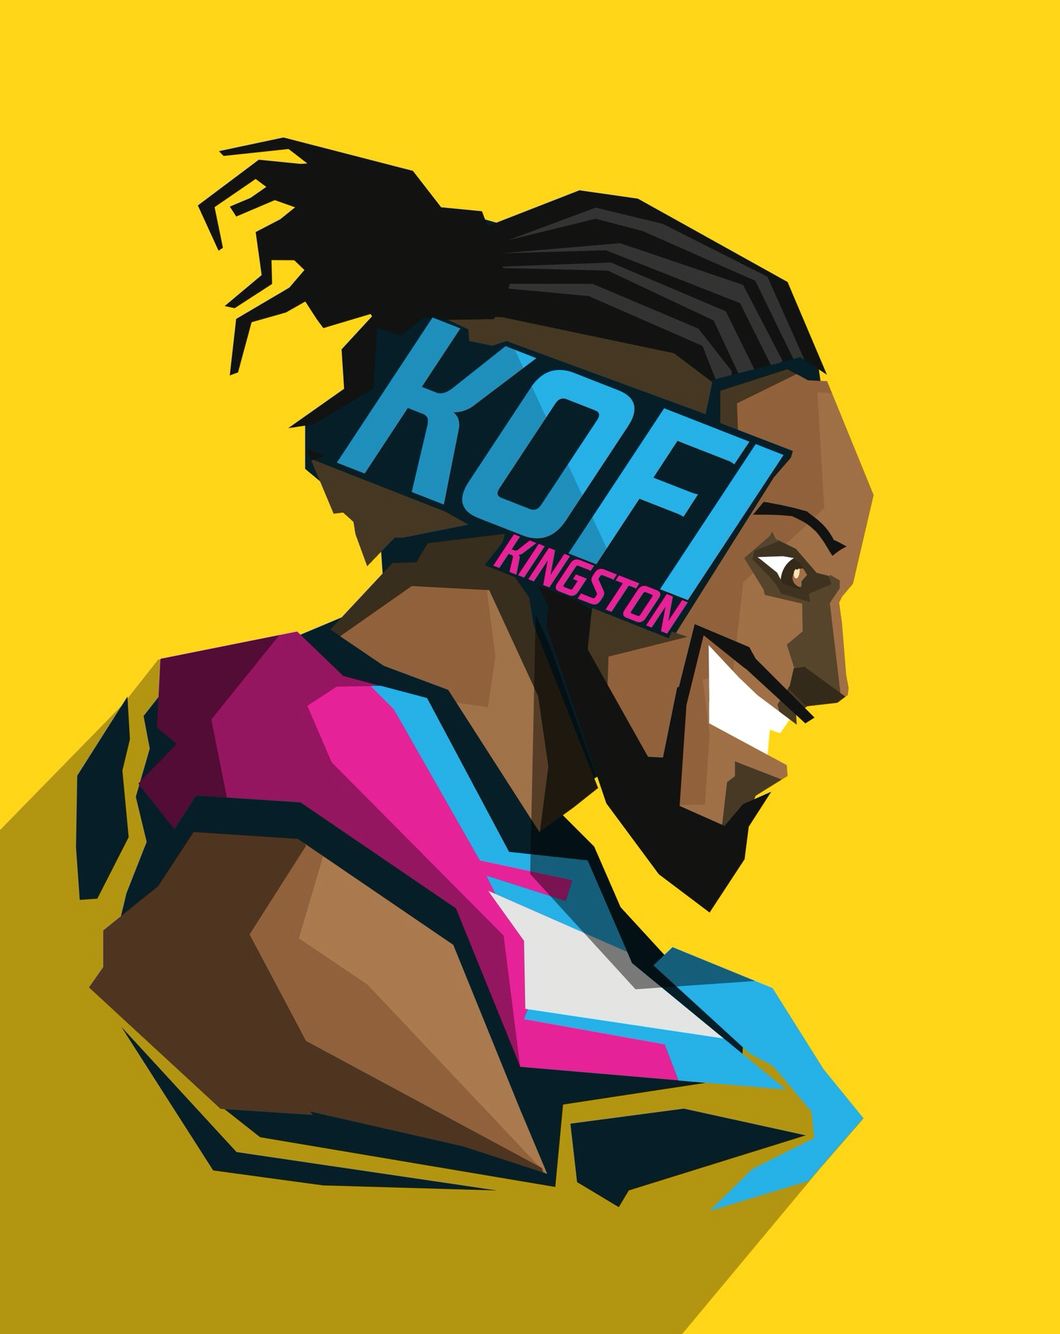 Kofi Kingston. Wwe logo, Wrestling wwe, Wwe wallpaper